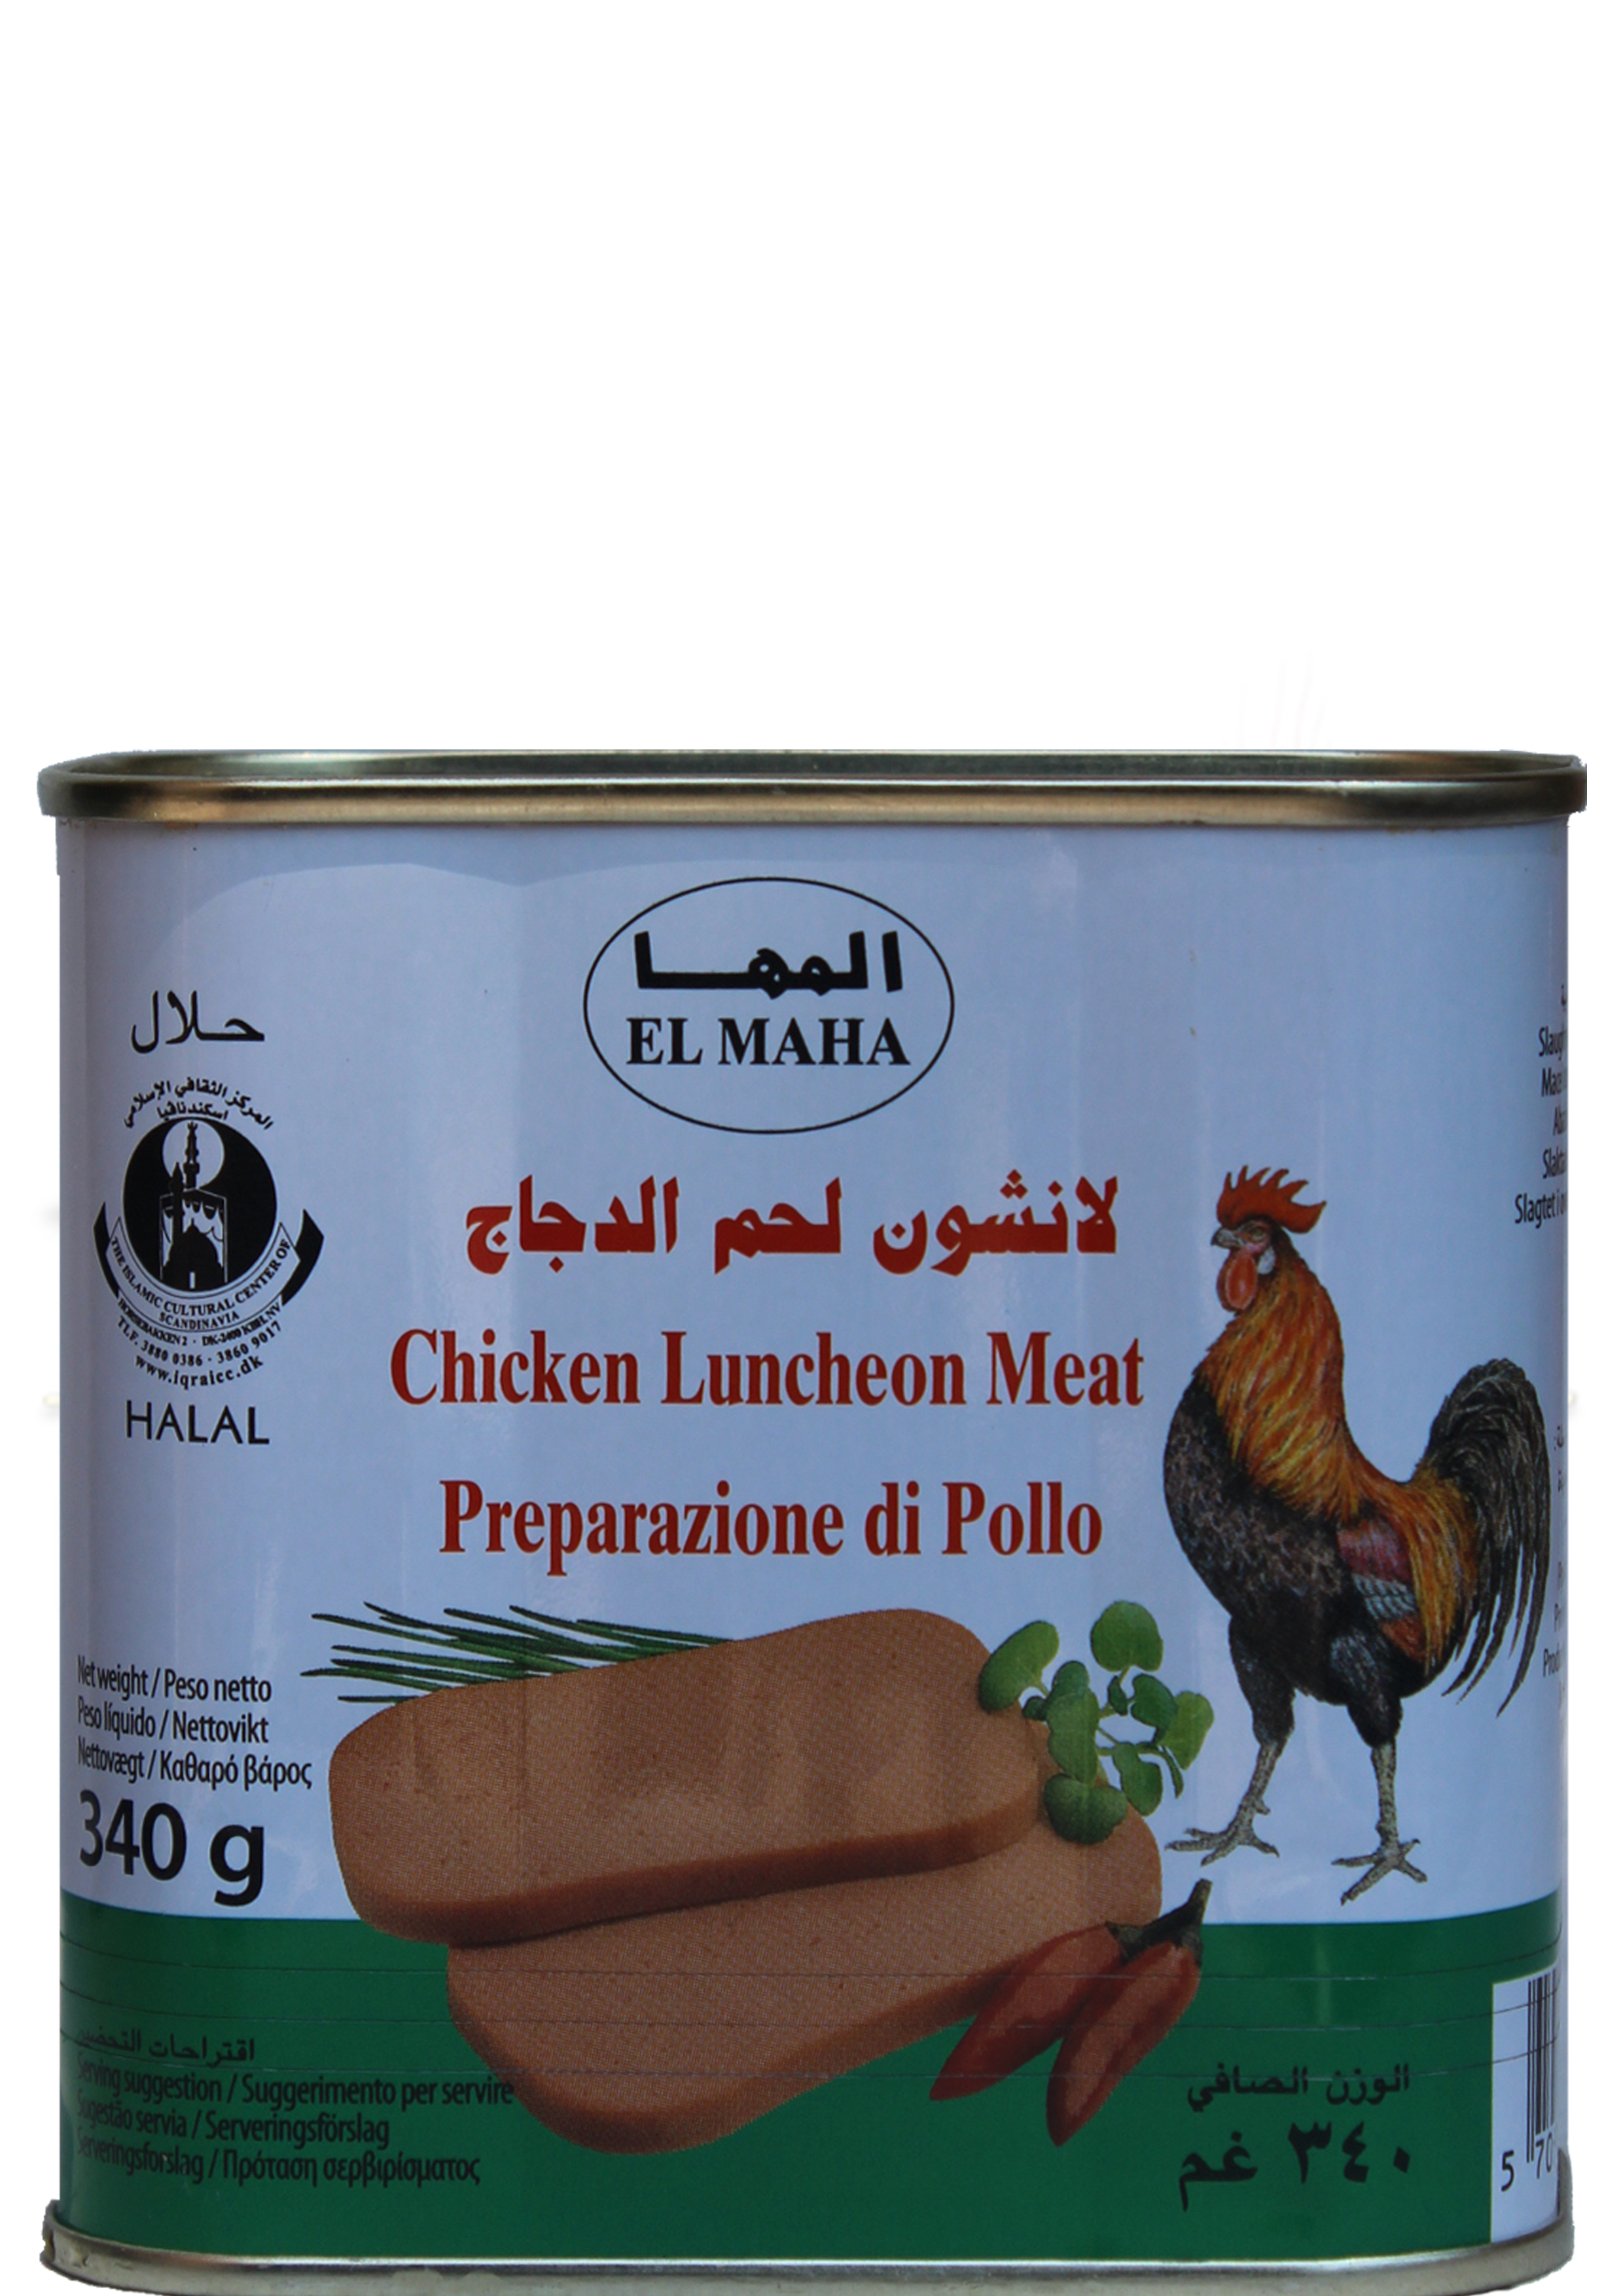 chicken luncheon meat